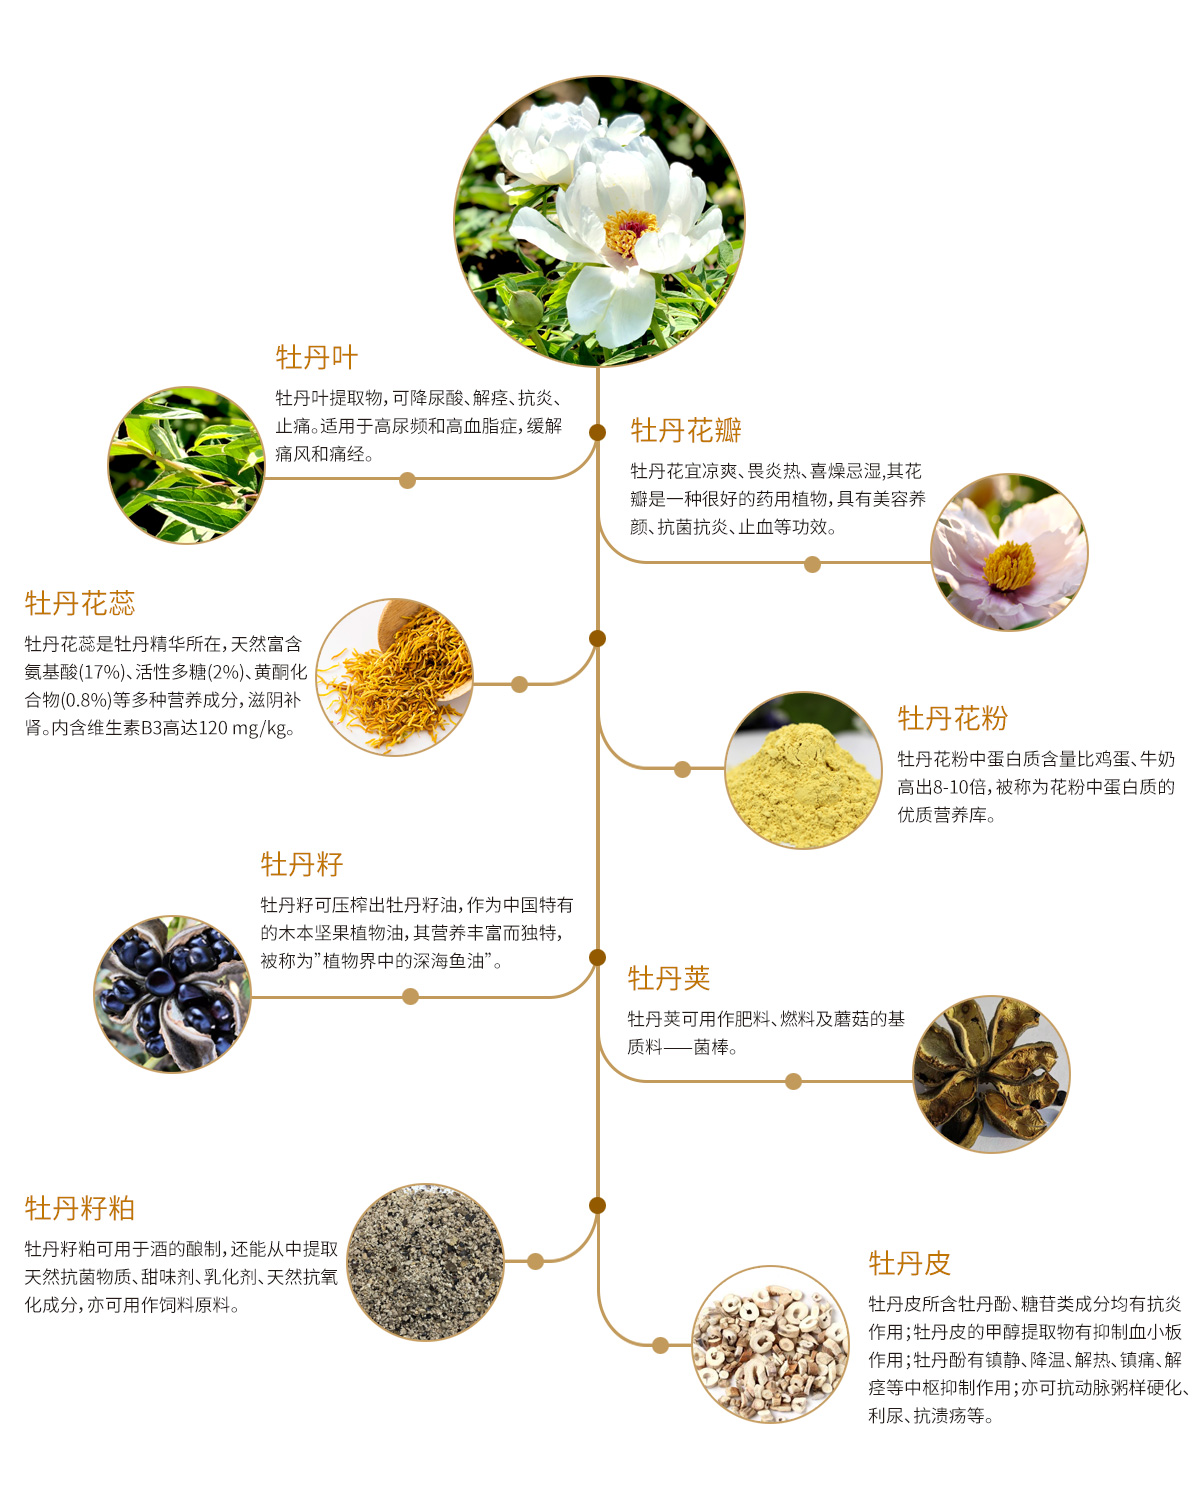 山茱萸-药用植物花谱-图片